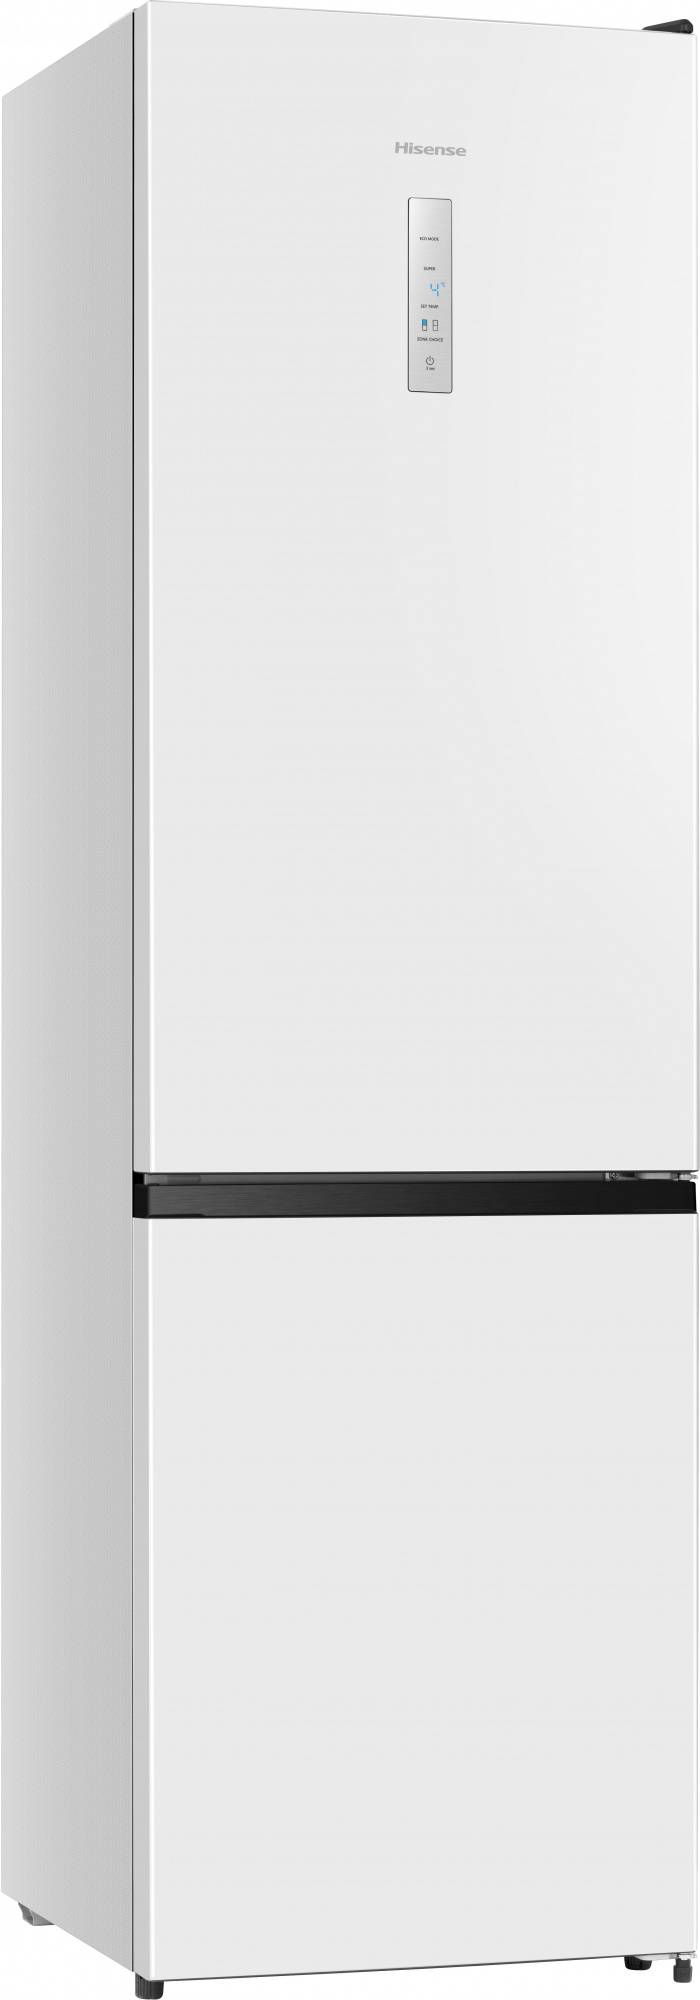 Холодильник двухкамерный Hisense RB440N4BW1